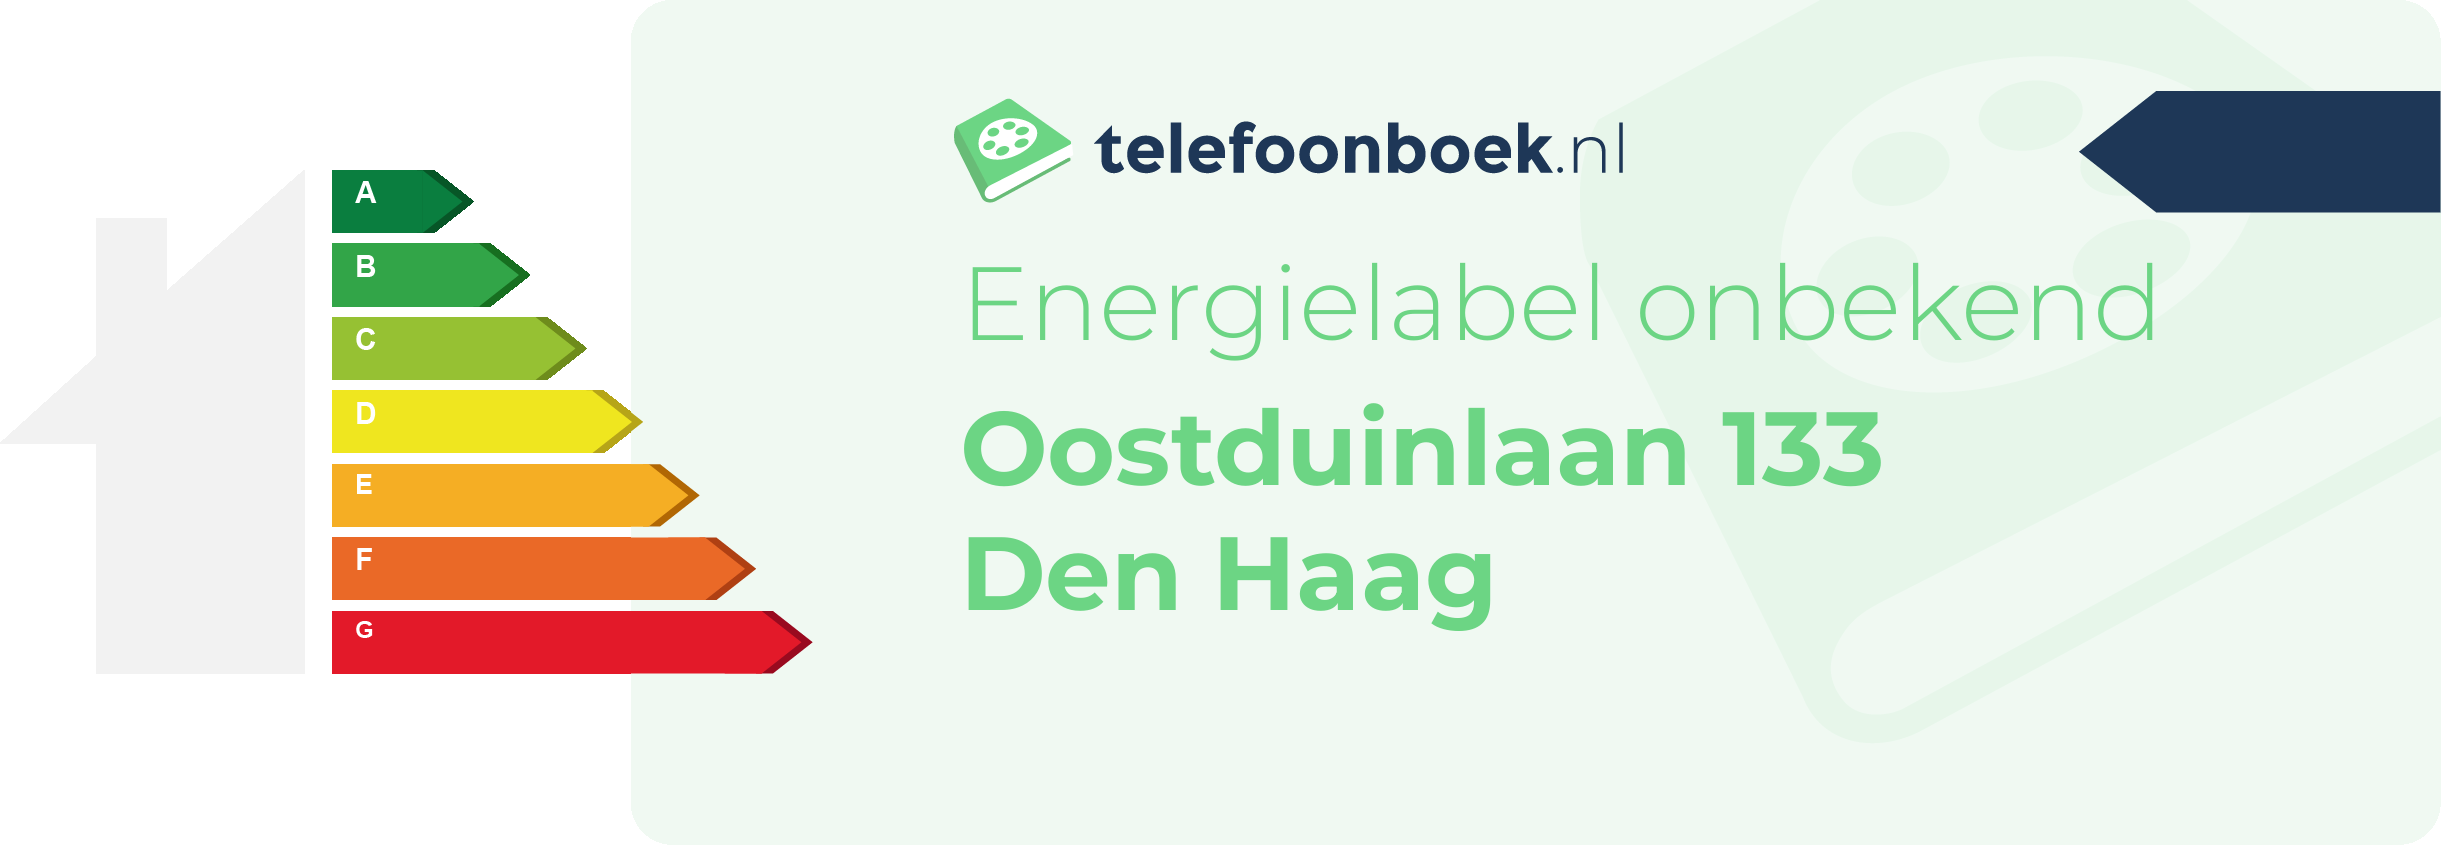 Energielabel Oostduinlaan 133 Den Haag